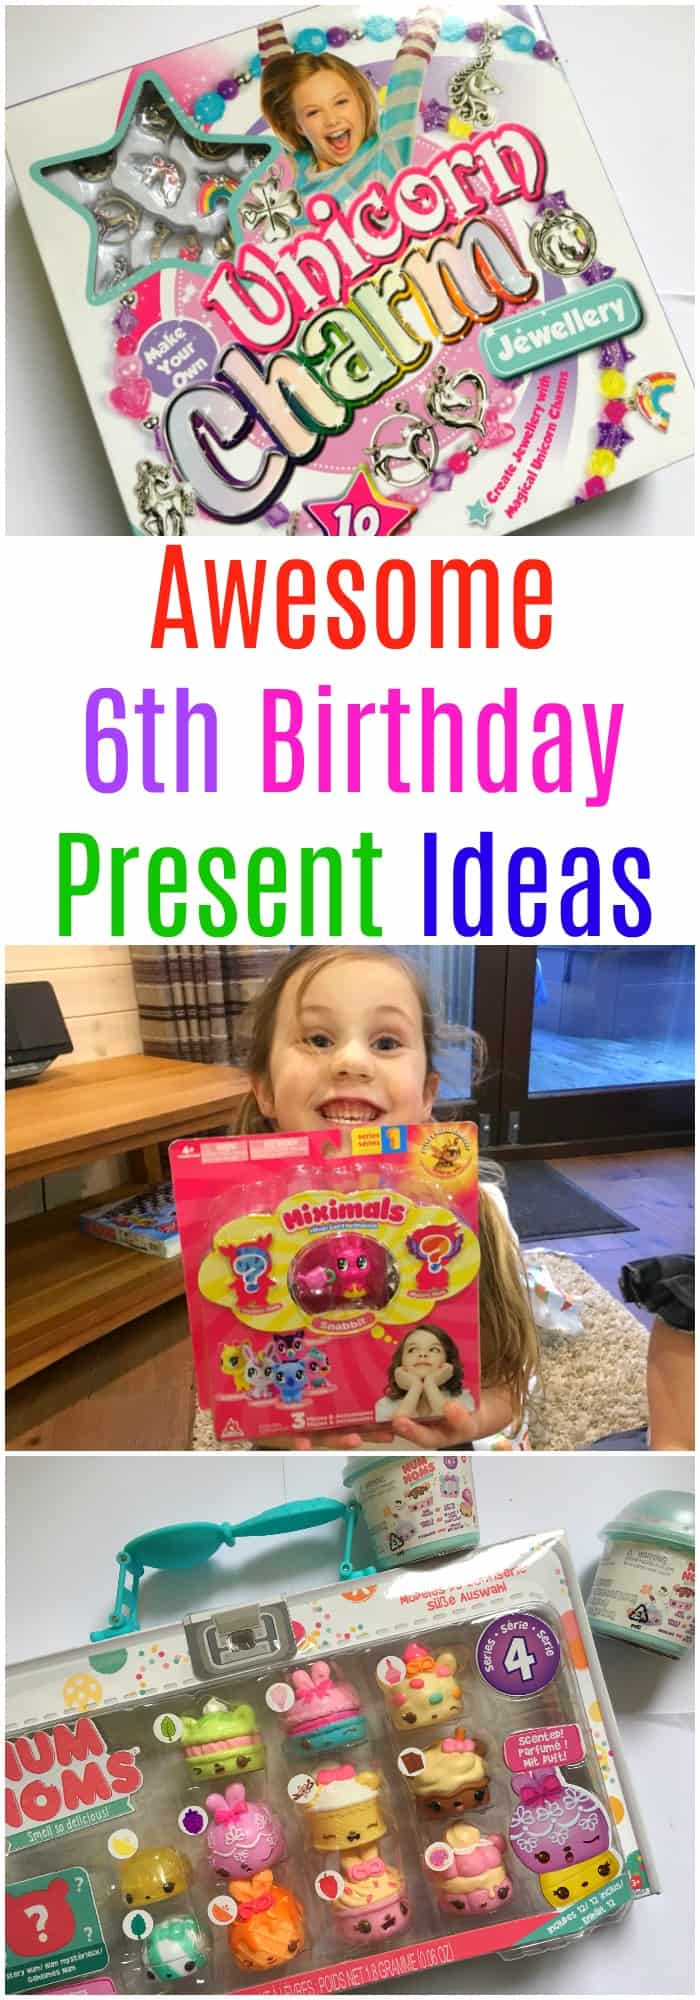 Awesome 6th Birthday Present ideas #wishlist #giftideas #birthdaypresents 